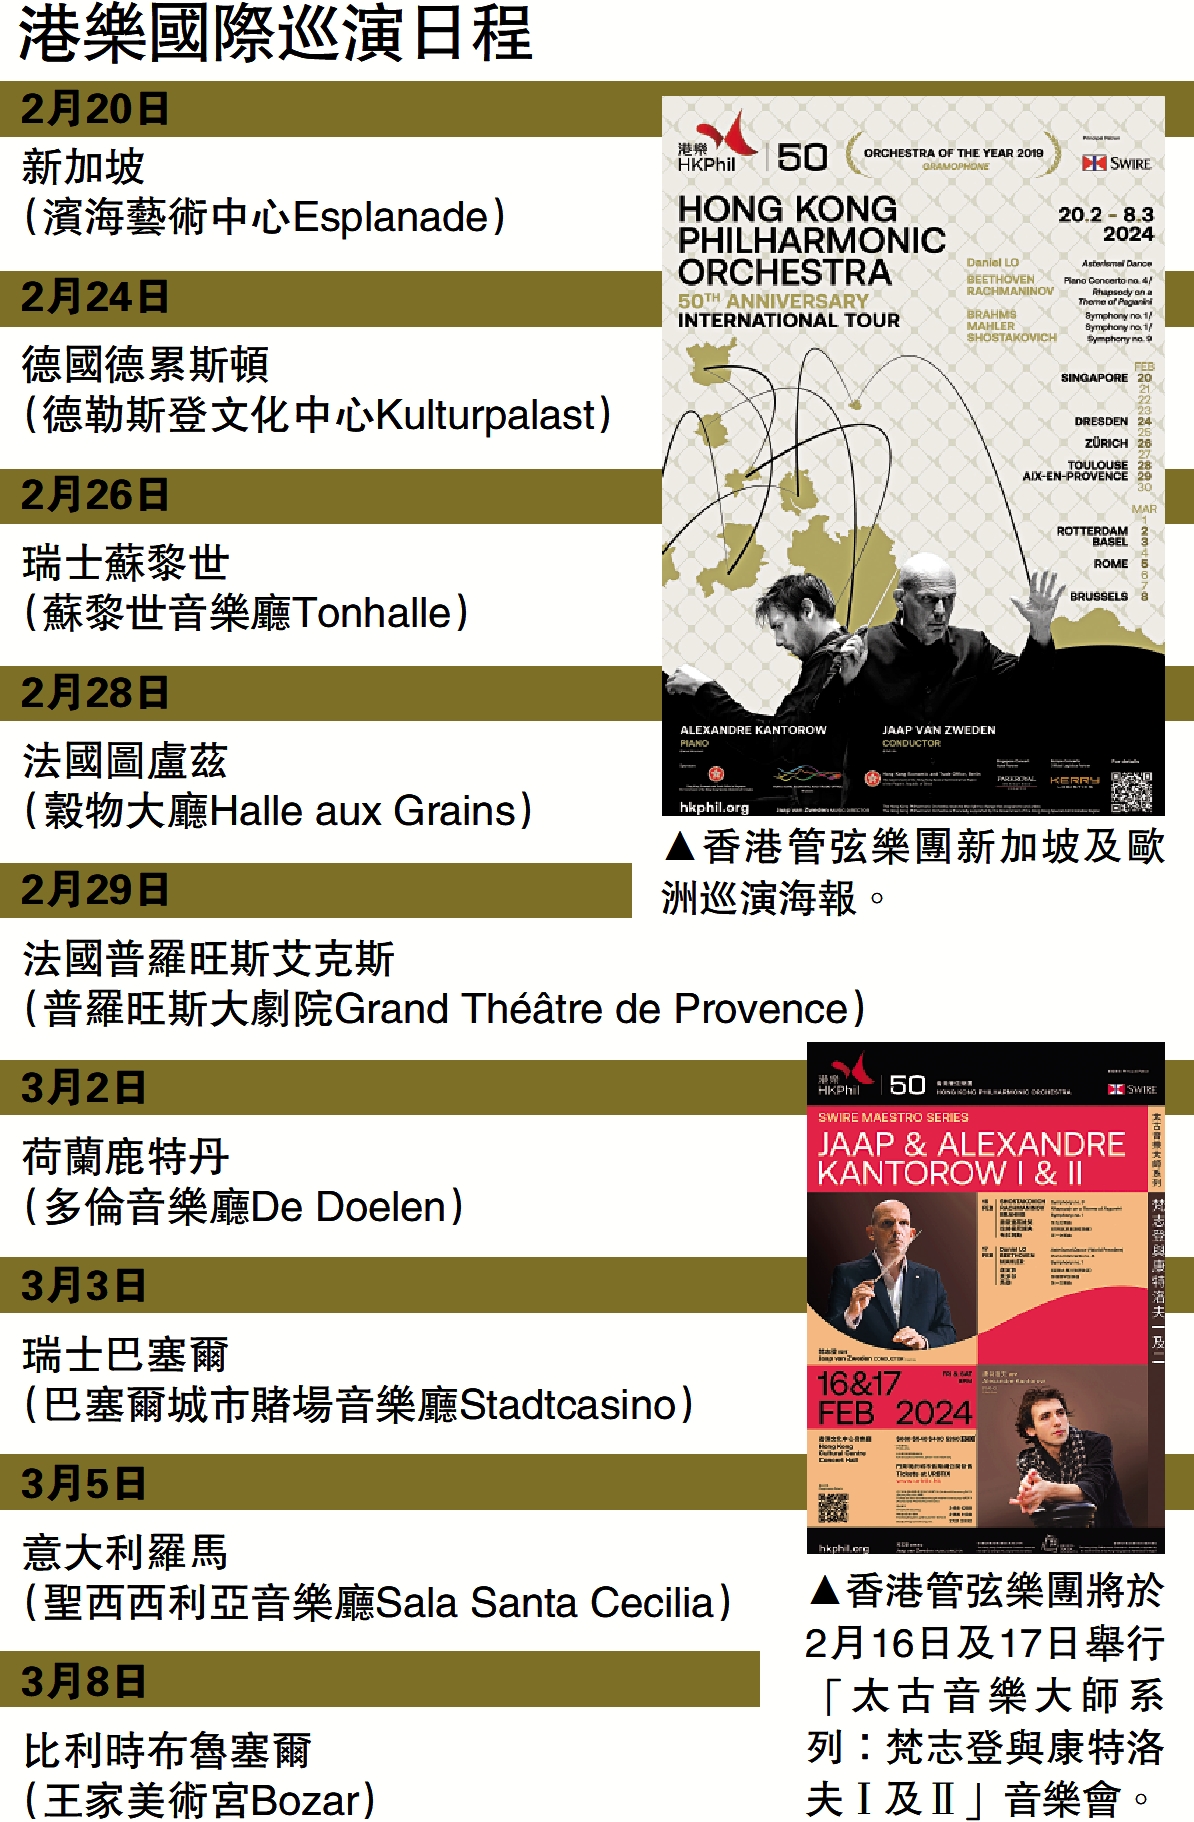 　　上圖：香港管弦樂團新加坡及歐洲巡演海報。下圖：香港管弦樂團將於2月16日及17日舉行「太古音樂大師系列：梵志登與康特洛夫Ⅰ及Ⅱ」音樂會。